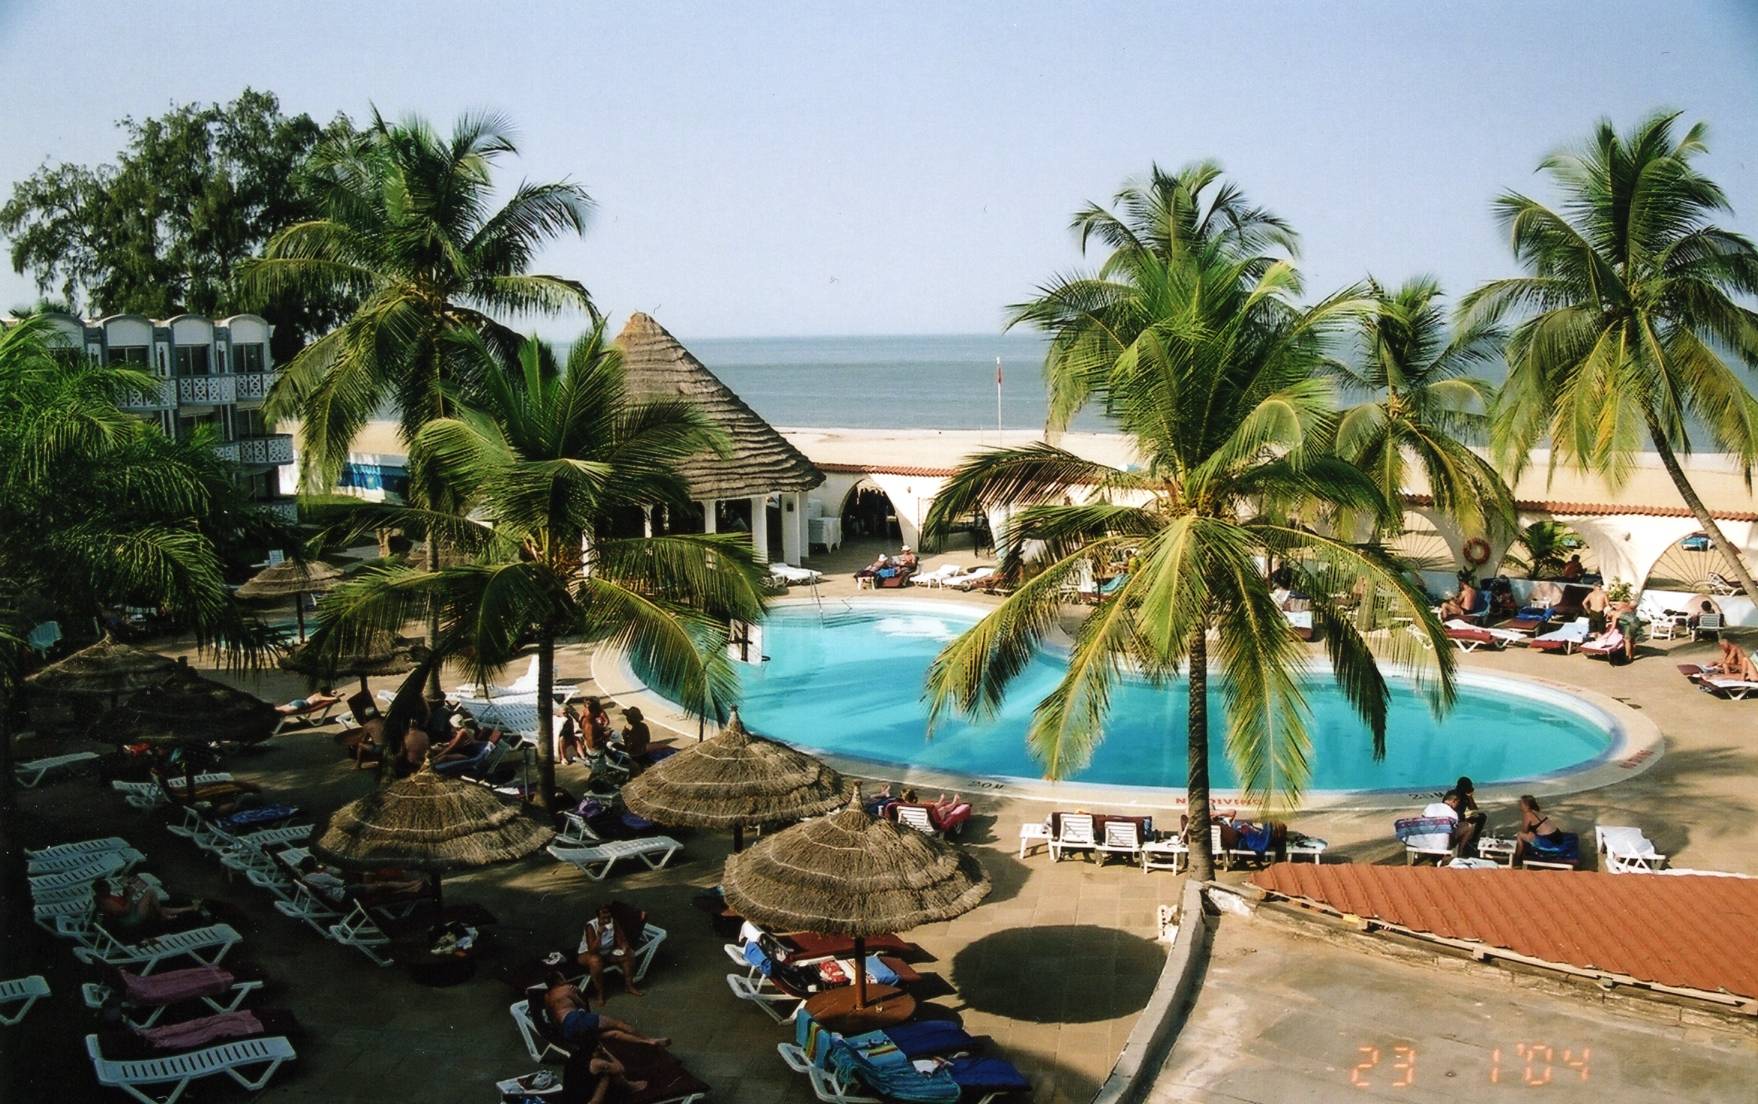 Our hotel Corinthia Atlantic in Banjul